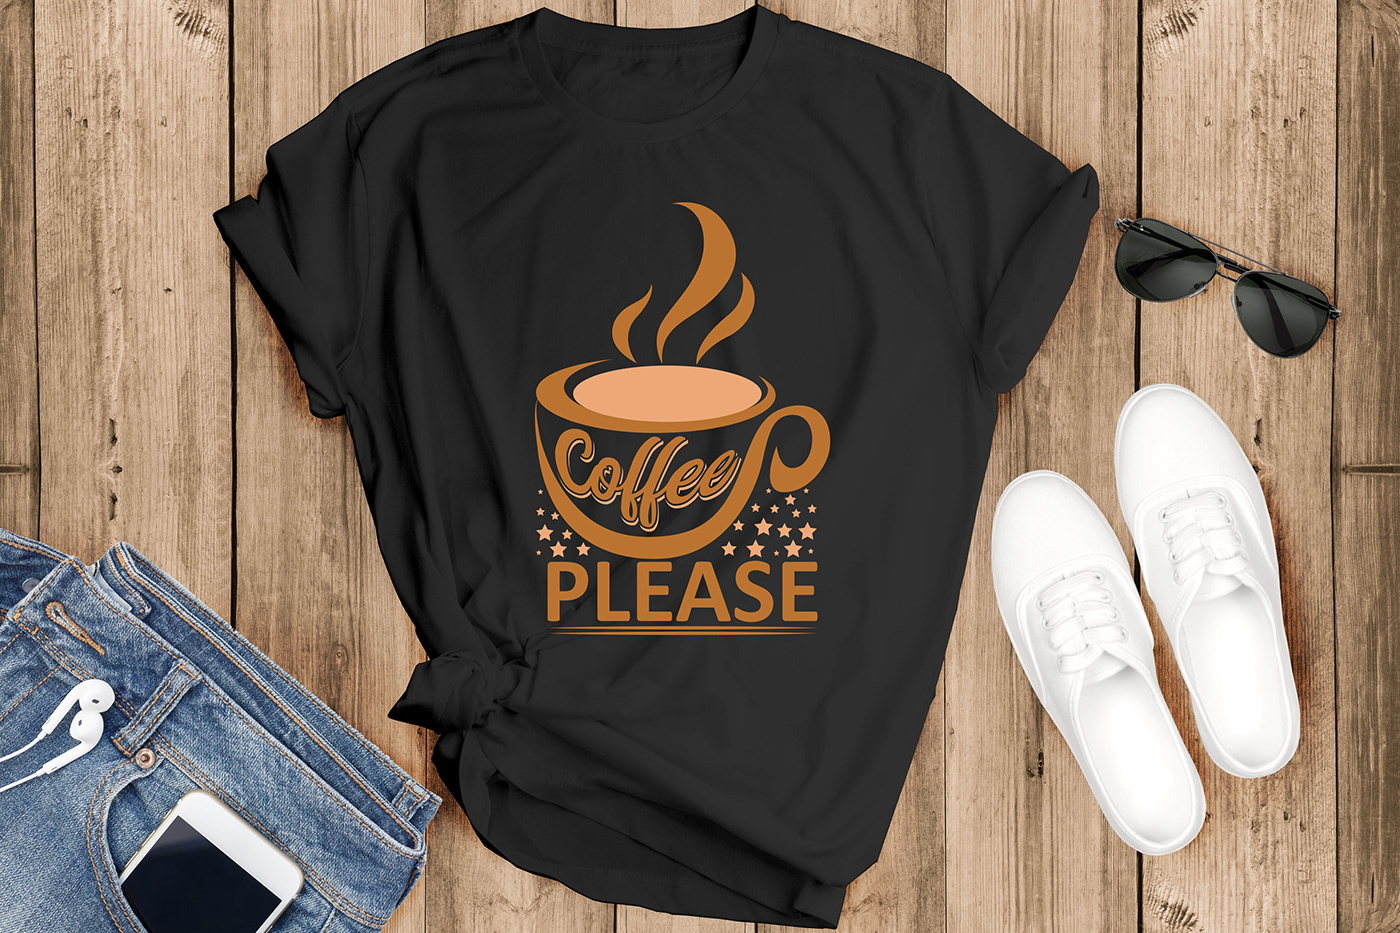 Coffee Tshirt coffee tshirts coffee tshirt design Coffee Tshirt Designs coffee tee coffee tees coffee tee design coffee tee DESIGNS coffee shirt coffee shirts